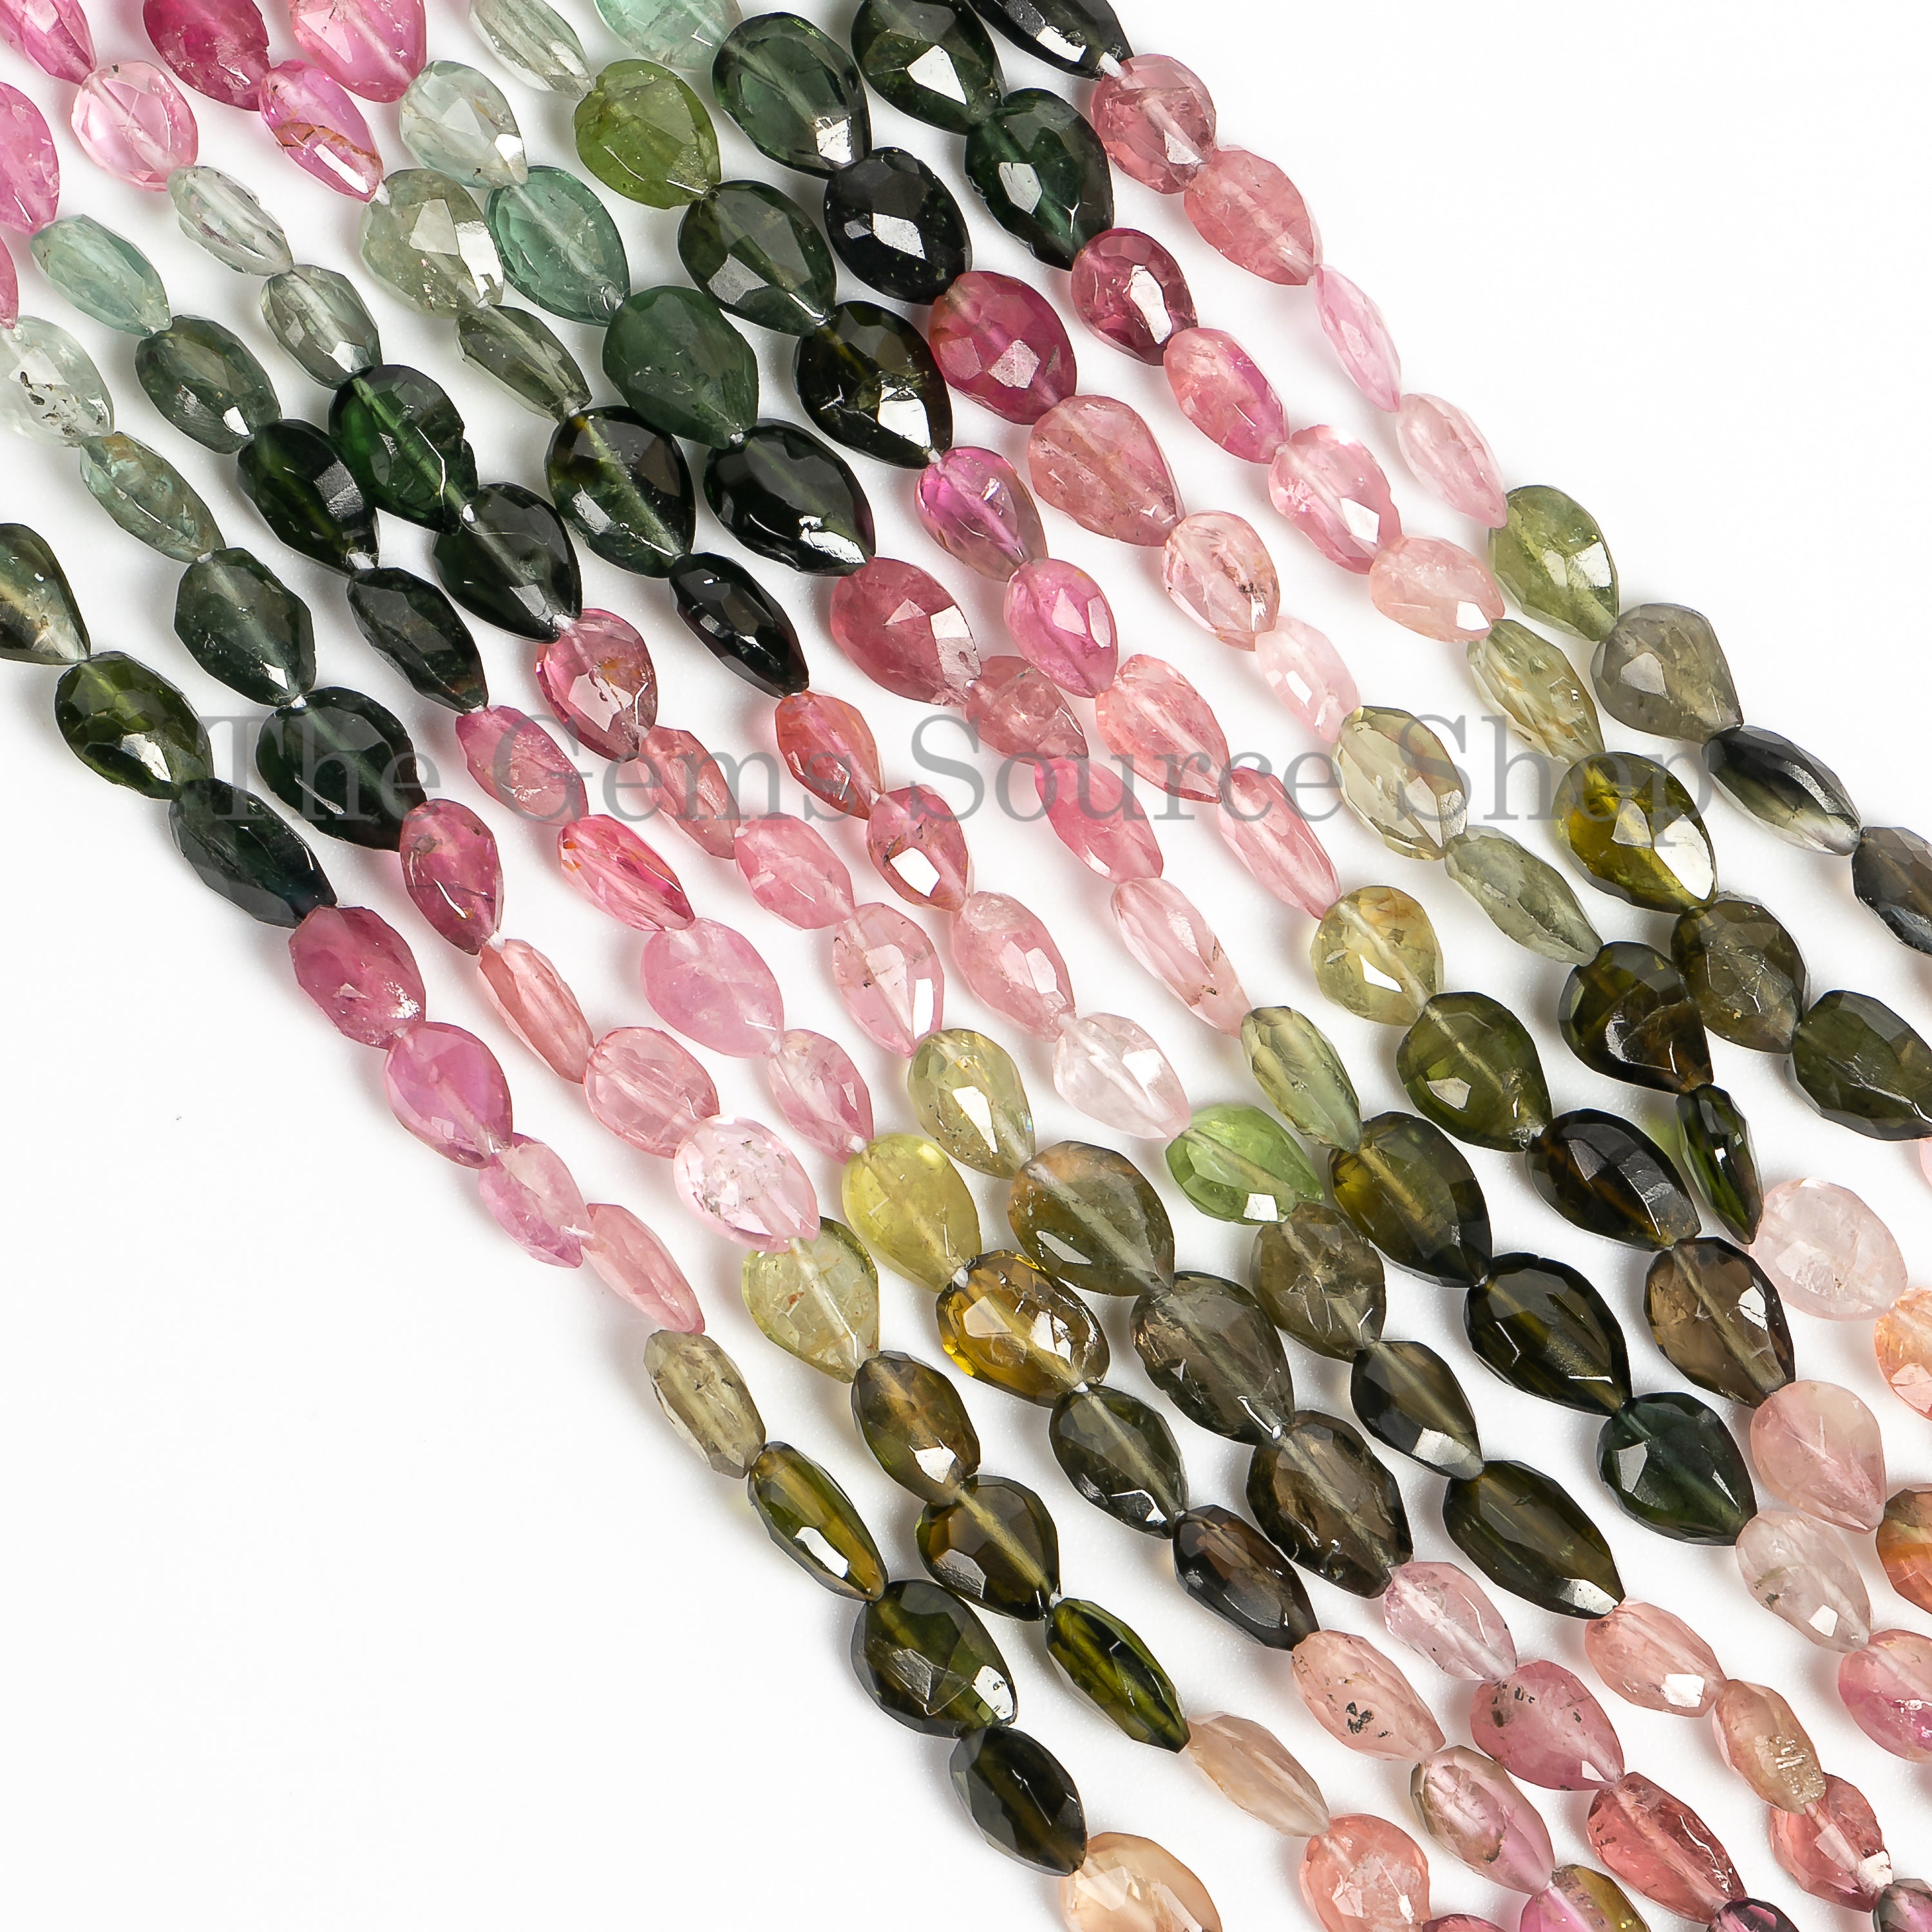 Natural Multi Tourmaline Beads, Tourmaline Faceted Beads, Tourmaline Pear Shape, Tourmaline Gemstone Beads